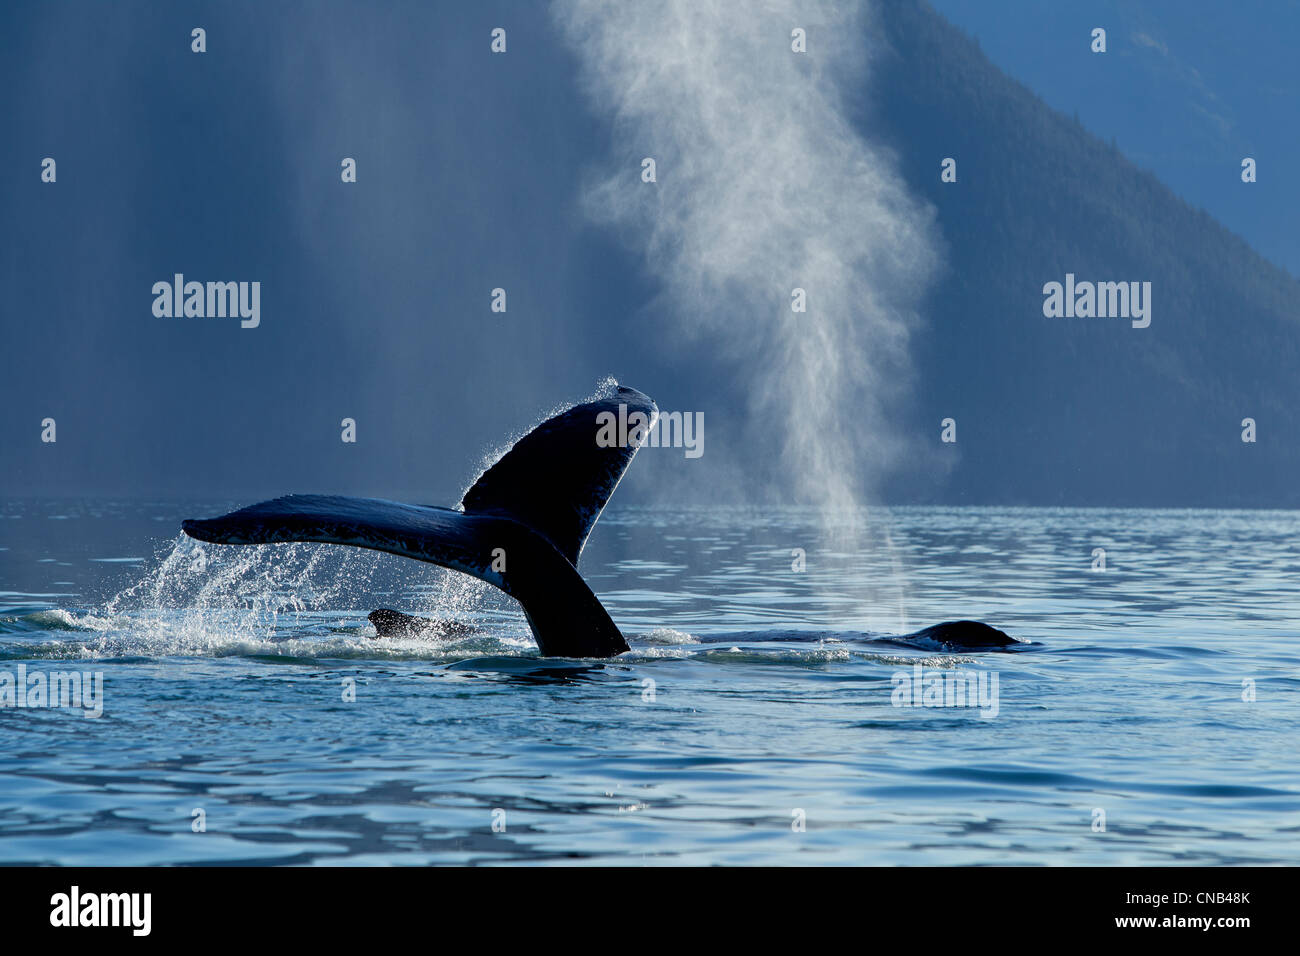 Une baleine à bosse ascenseurs sa nageoire caudale comme il plonge vers le bas dans l'île de l'Amirauté, passage Stephens, le passage de l'Intérieur, de l'Alaska, l'automne Banque D'Images